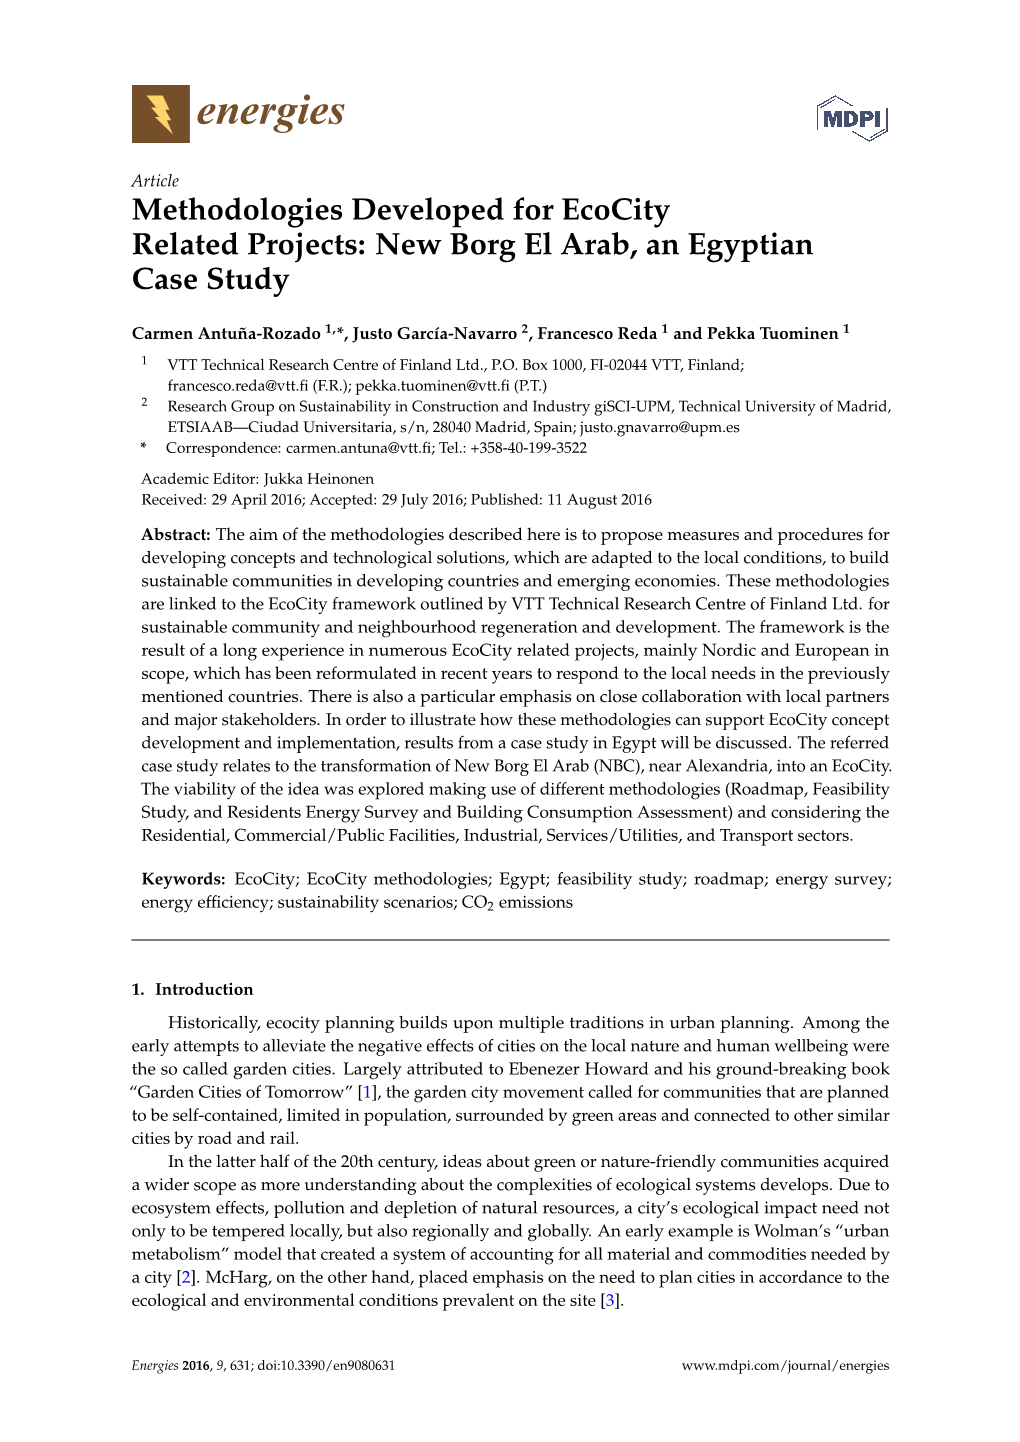 New Borg El Arab, an Egyptian Case Study